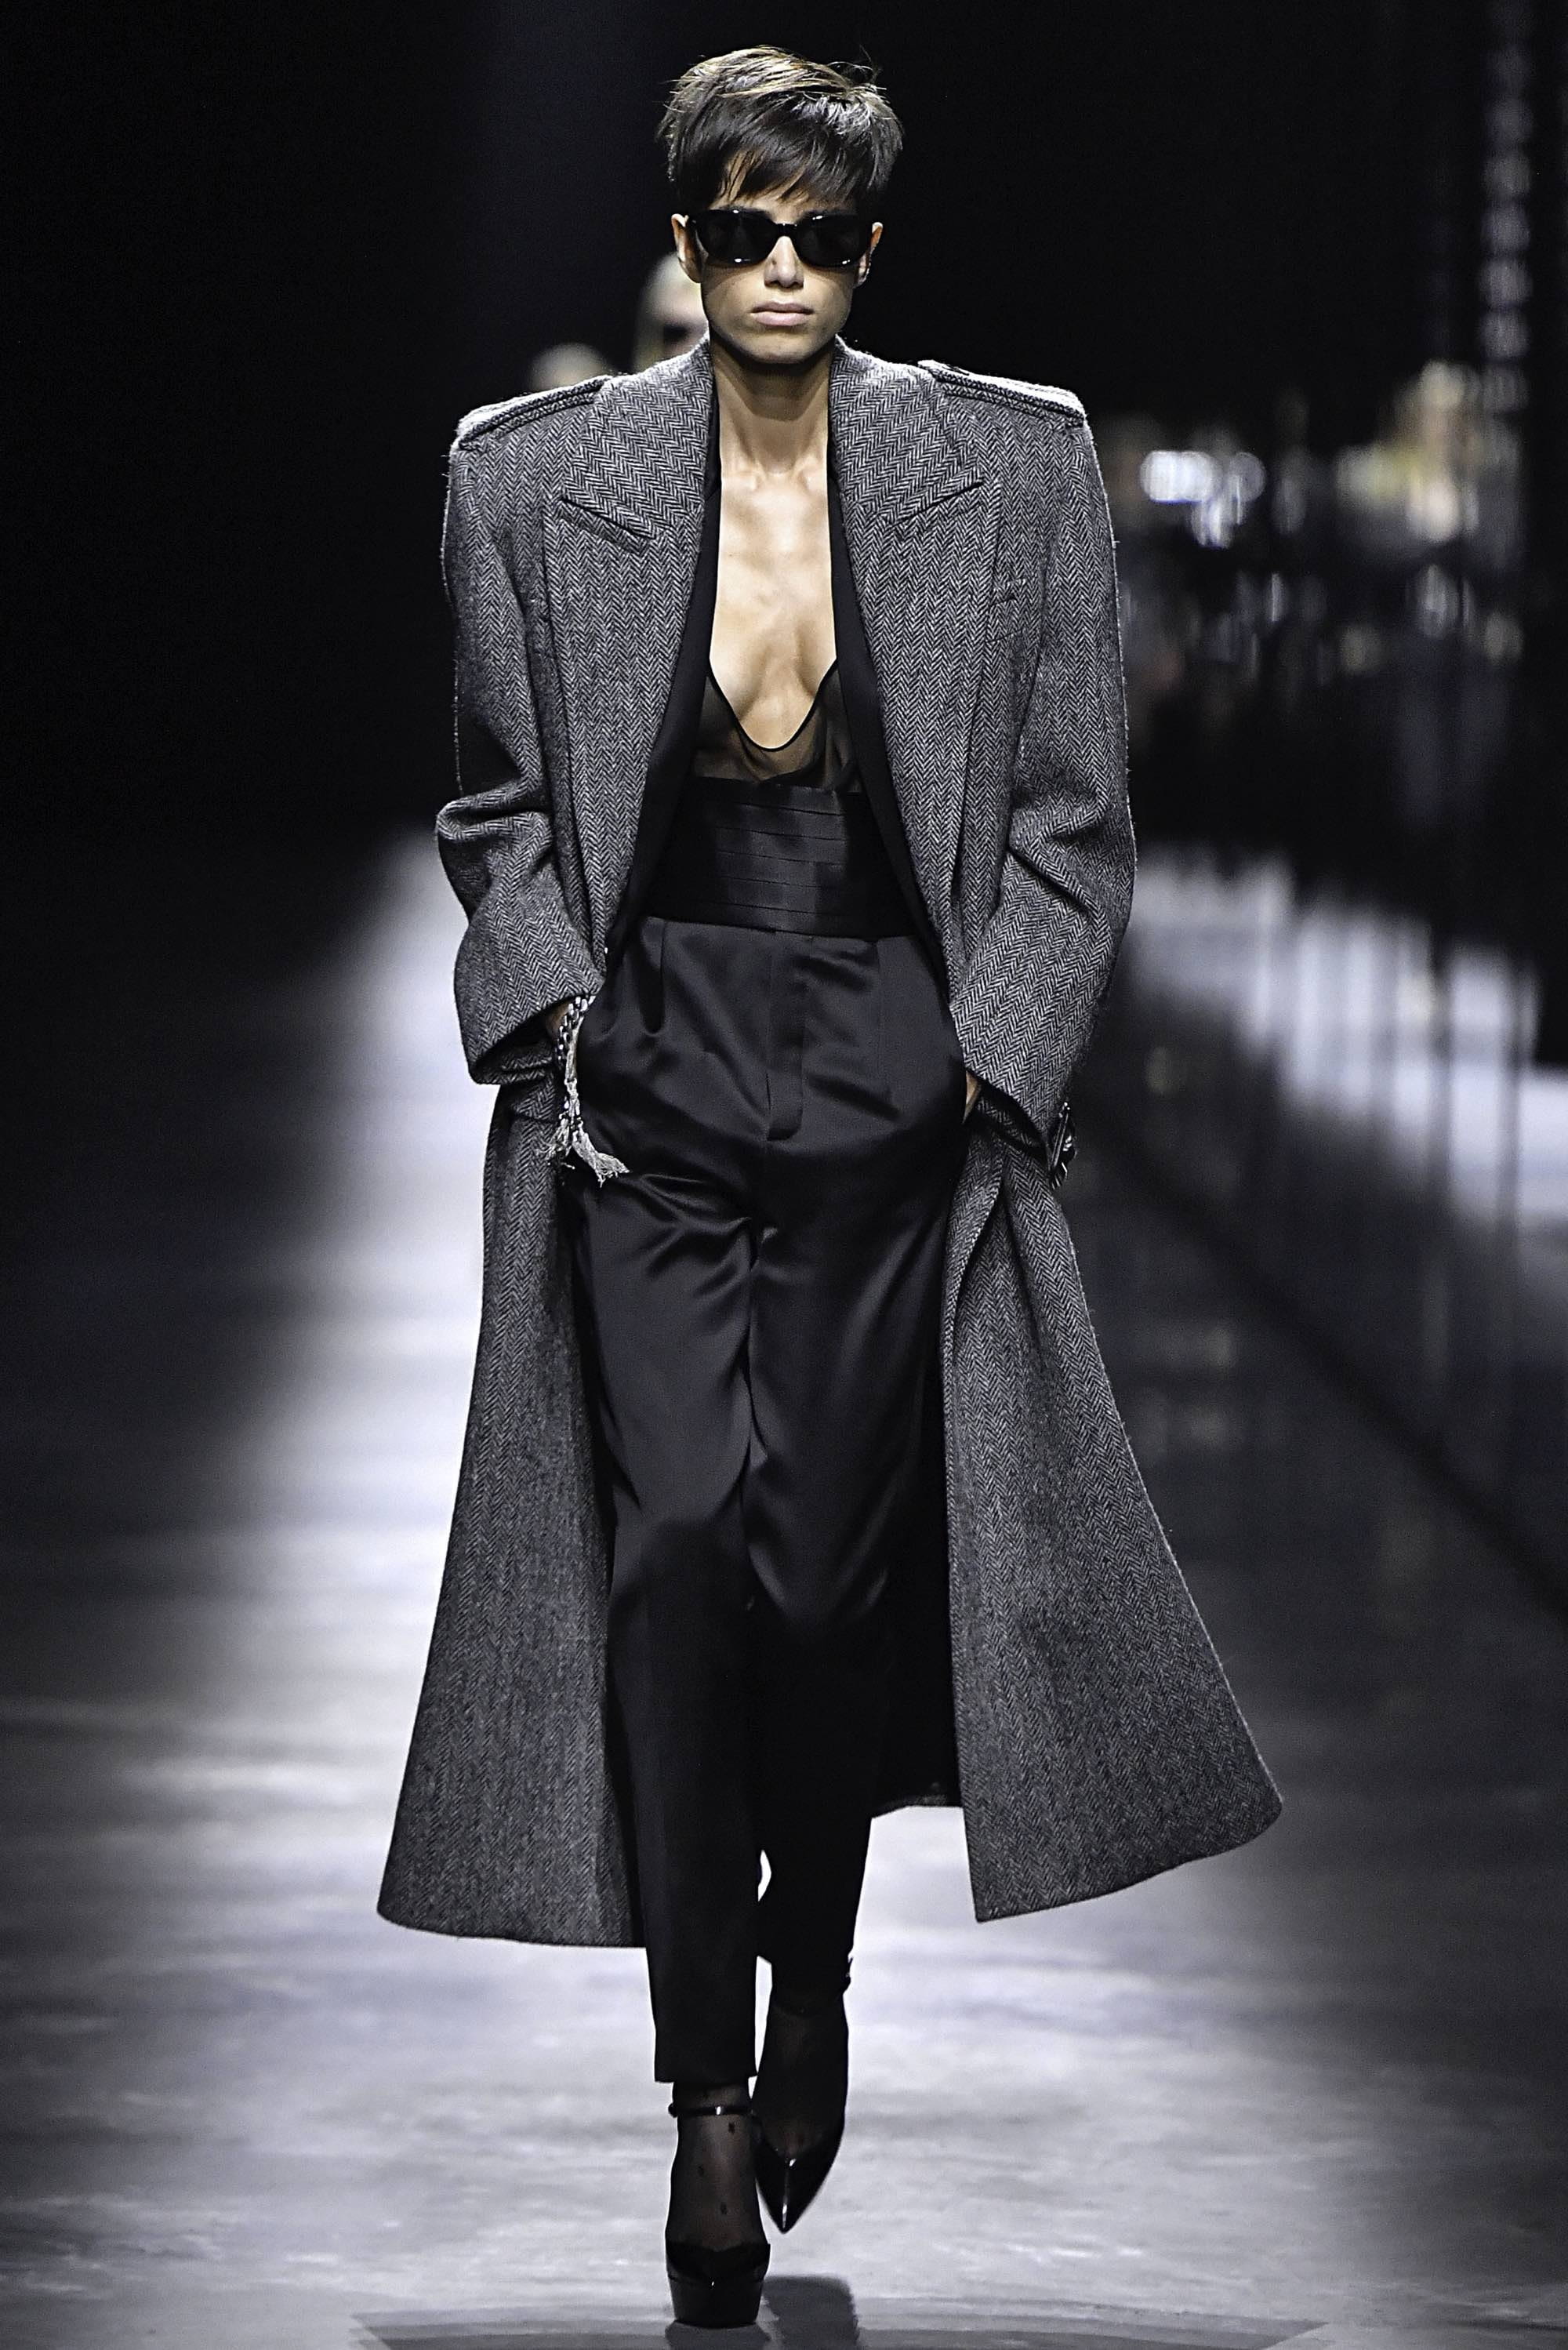 Chanel FW19 womenswear #1 - Tagwalk: The Fashion Search Engine